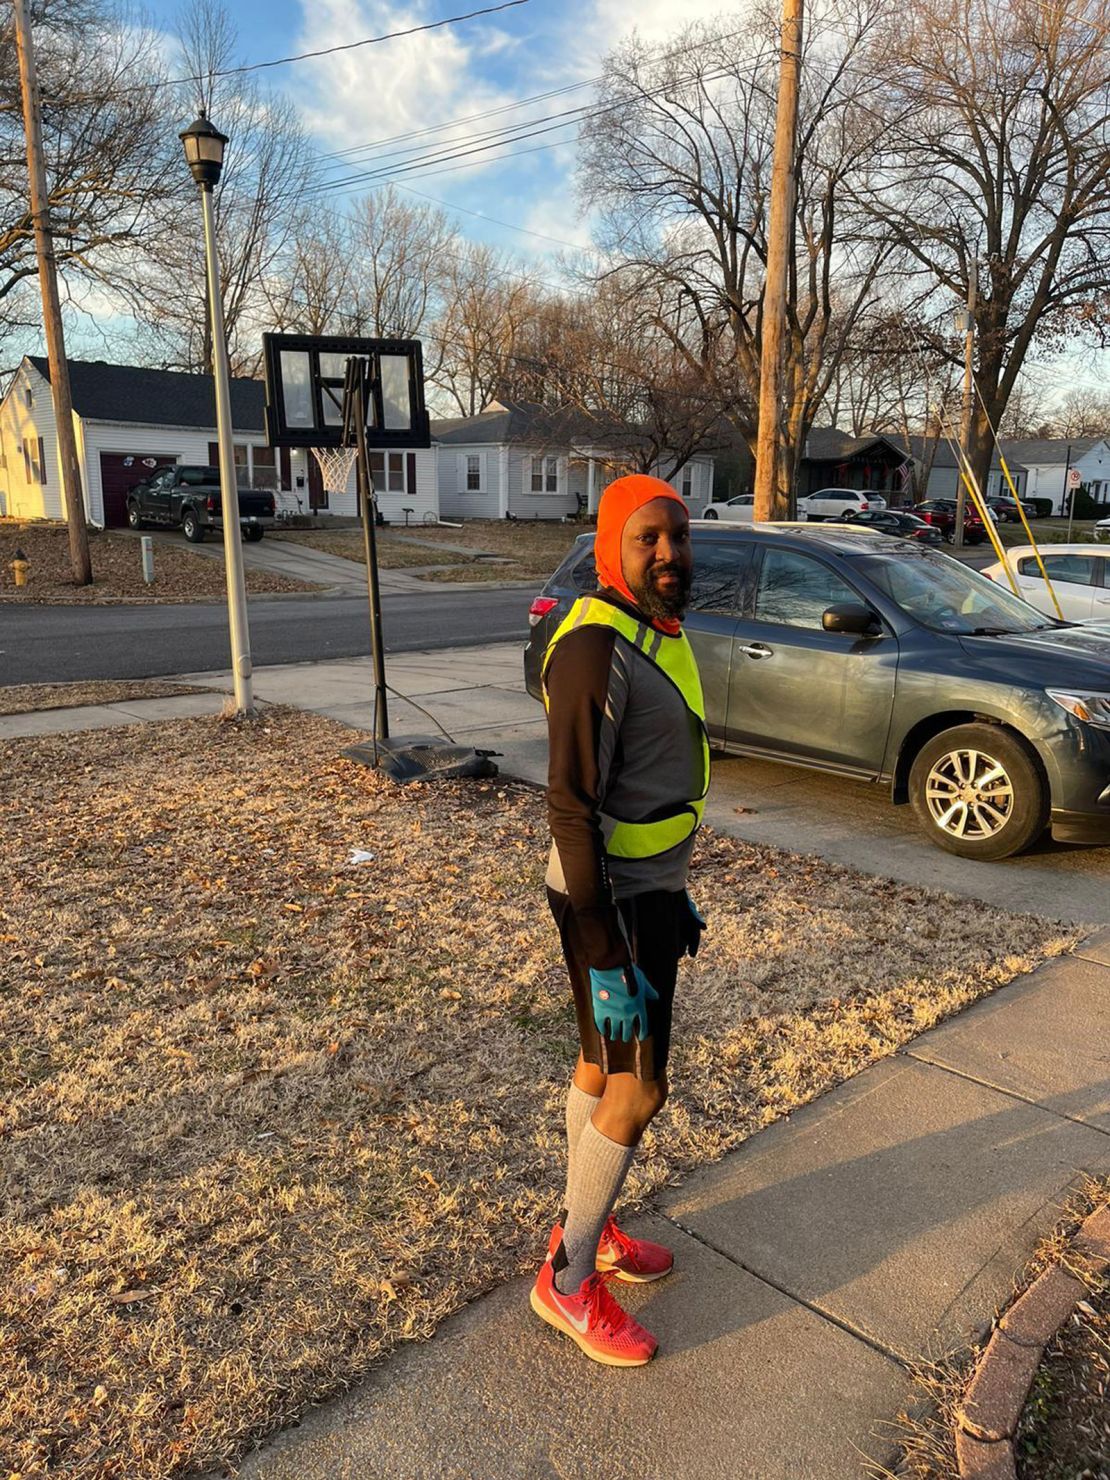 Avid runner Roy Oduor wears bright running gear to avoid getting mistaken for a criminal while running in Lenexa, Kansas.